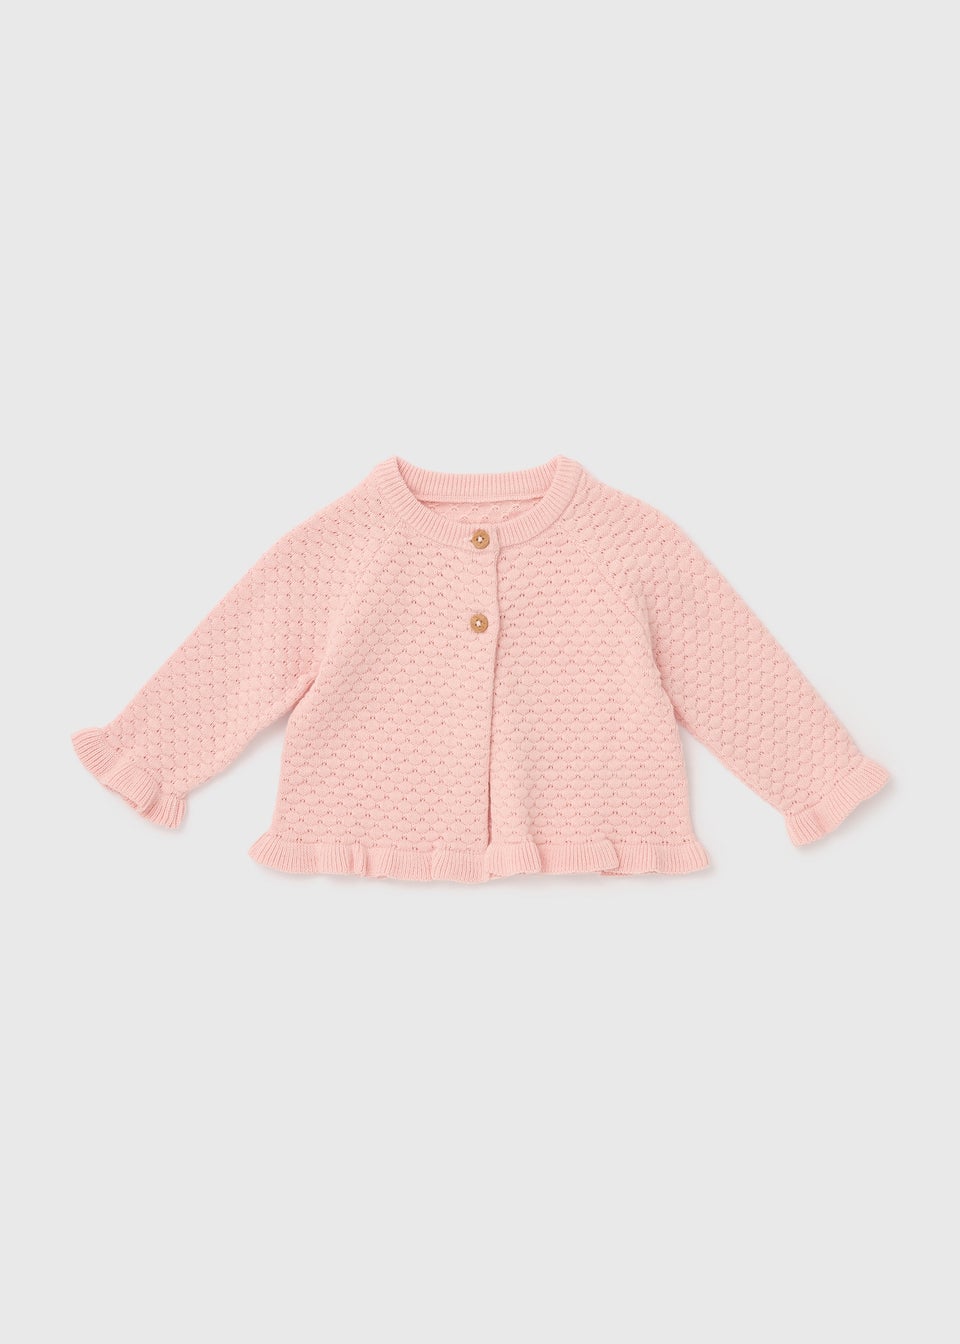 Girls Pink Frill Knit Cardigan (Newborn-23mths)